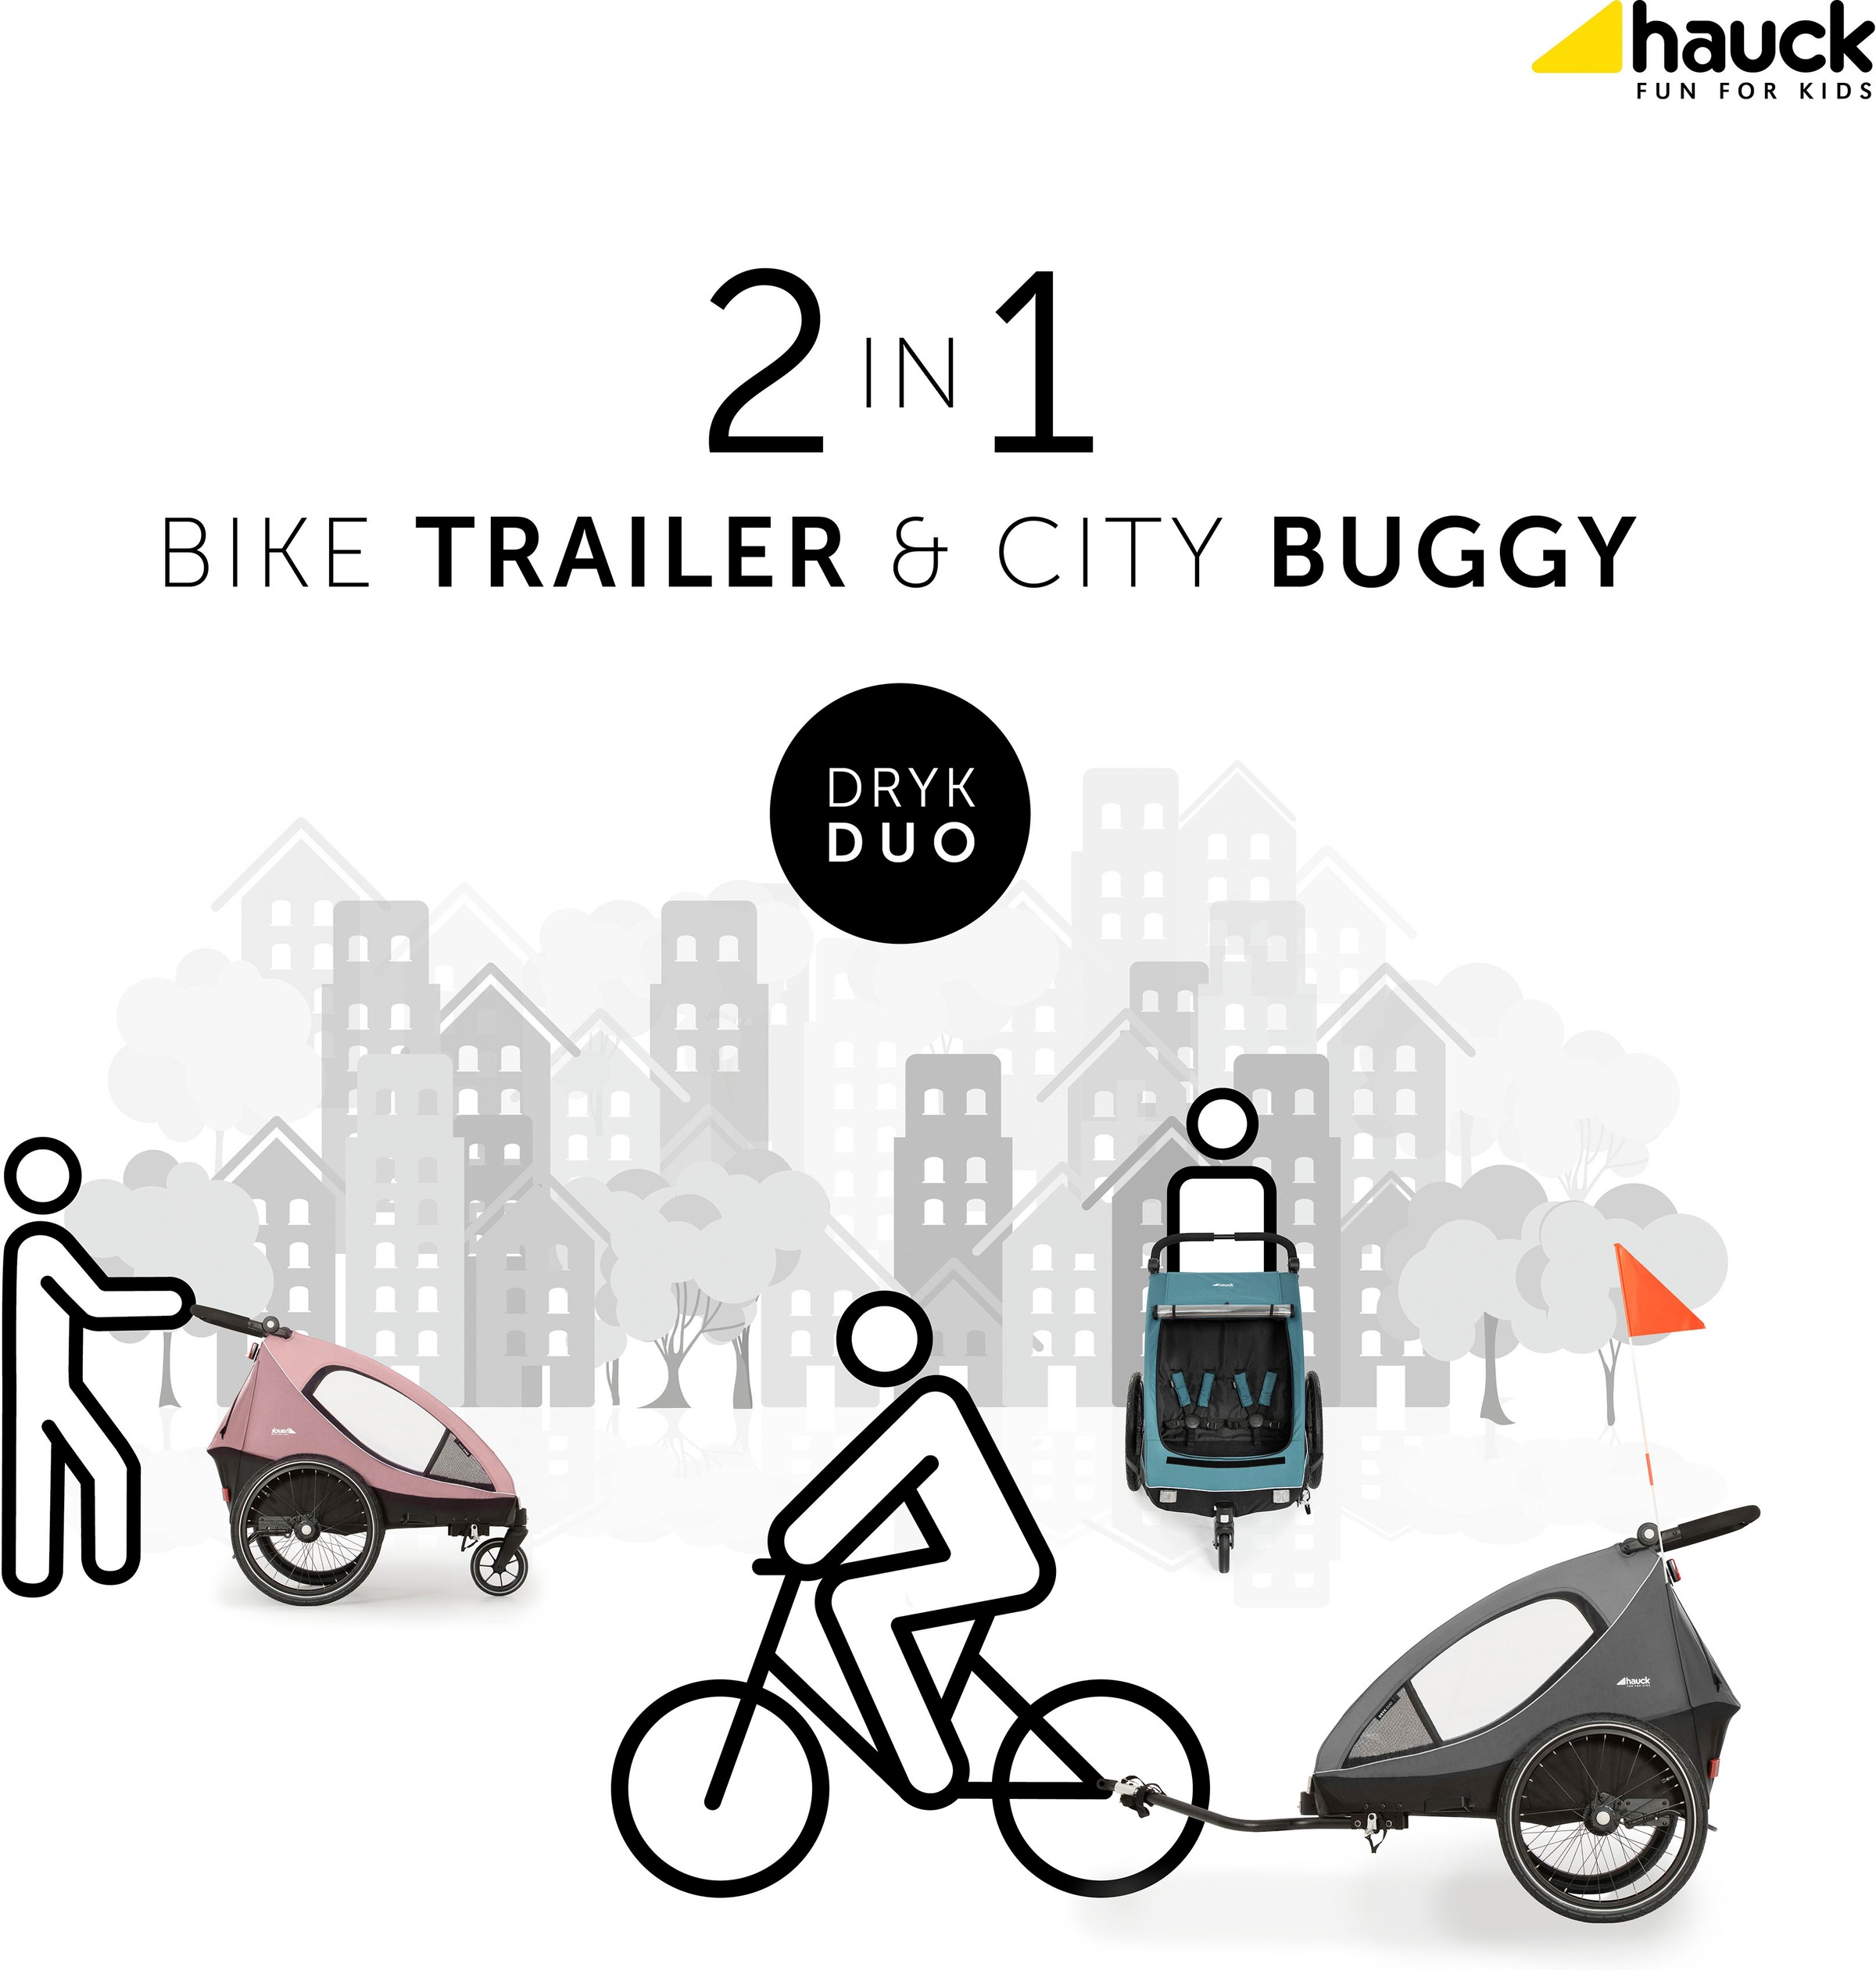 Hauck Fahrradkinderanhänger »2in1 Bike Trailer und Buggy Dryk Duo, rose«, für 2 Kinder; inklusive Deichsel